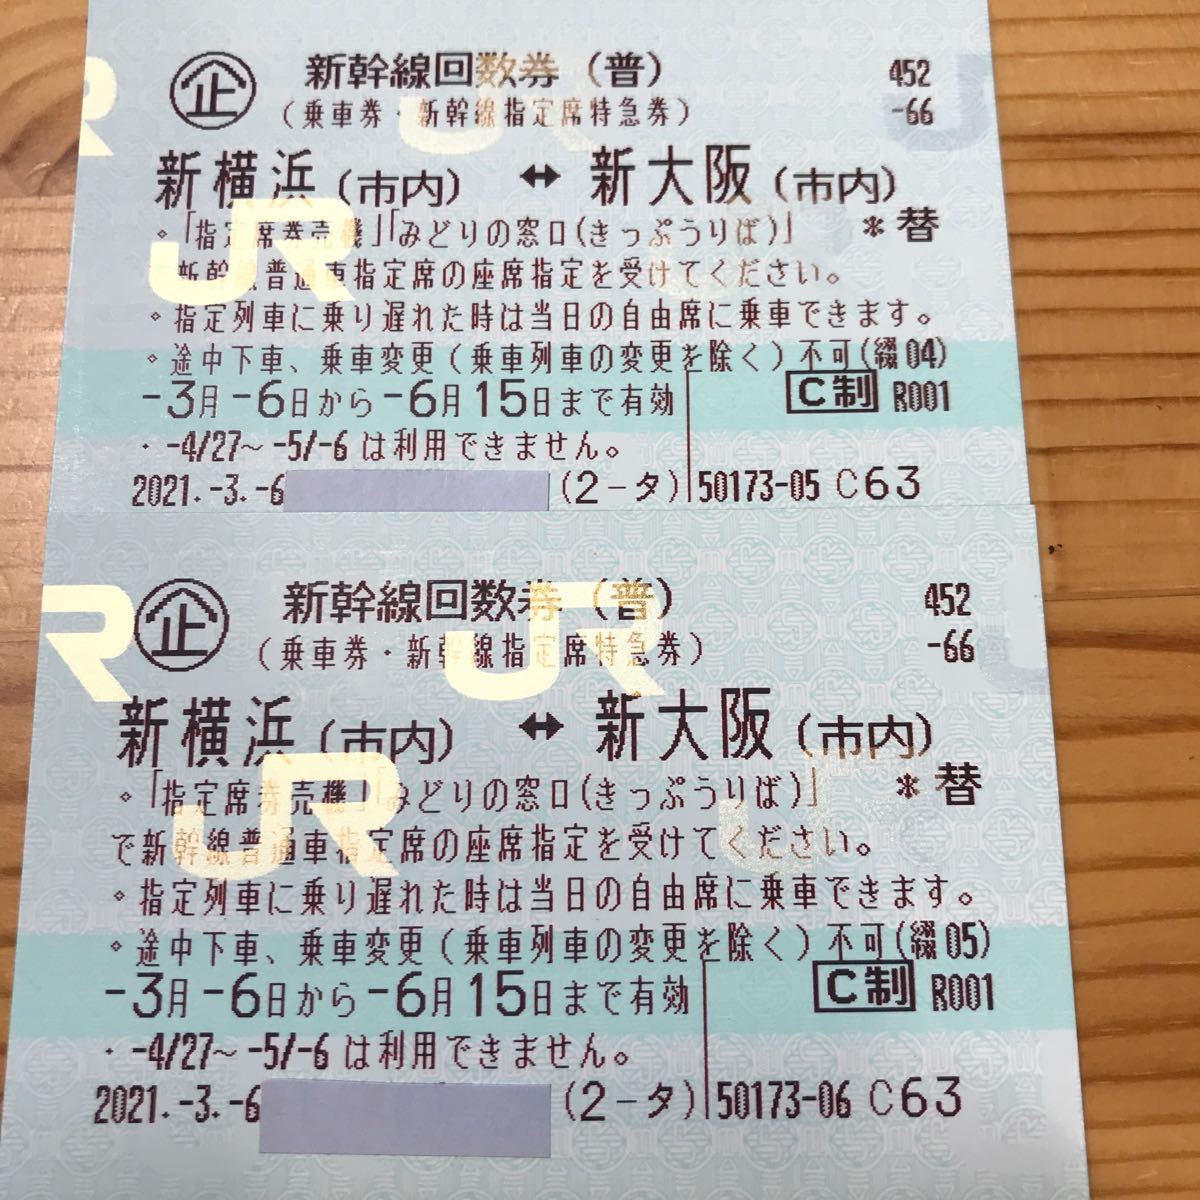 ったもので JR - 緊急！☆3/13期限☆新横浜←→新大阪 新幹線回数券 ...